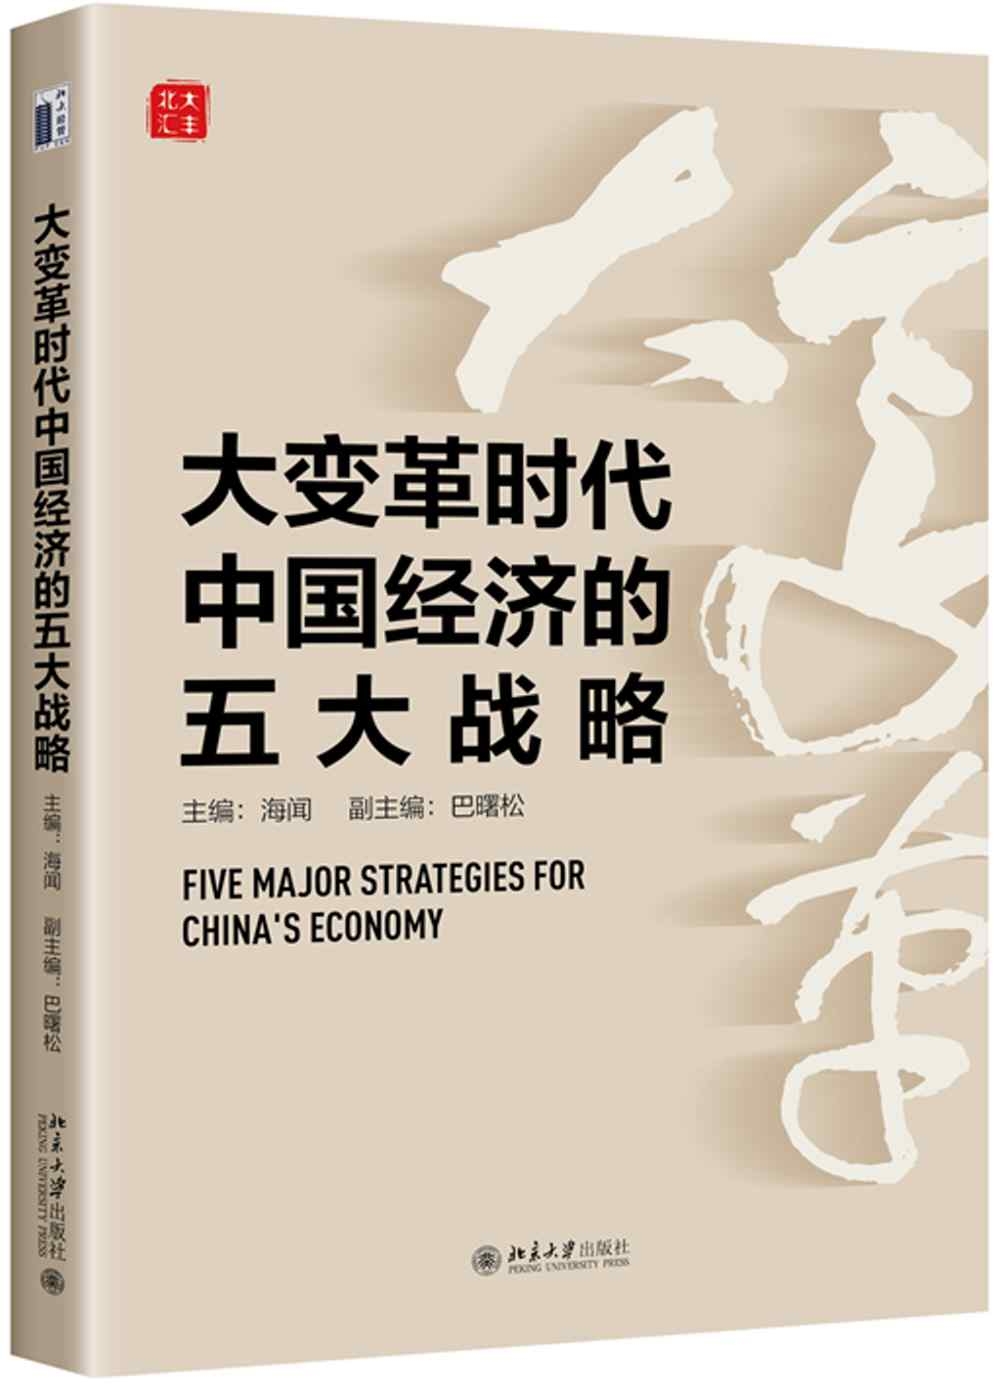 大變革時代中國經濟的五大戰略